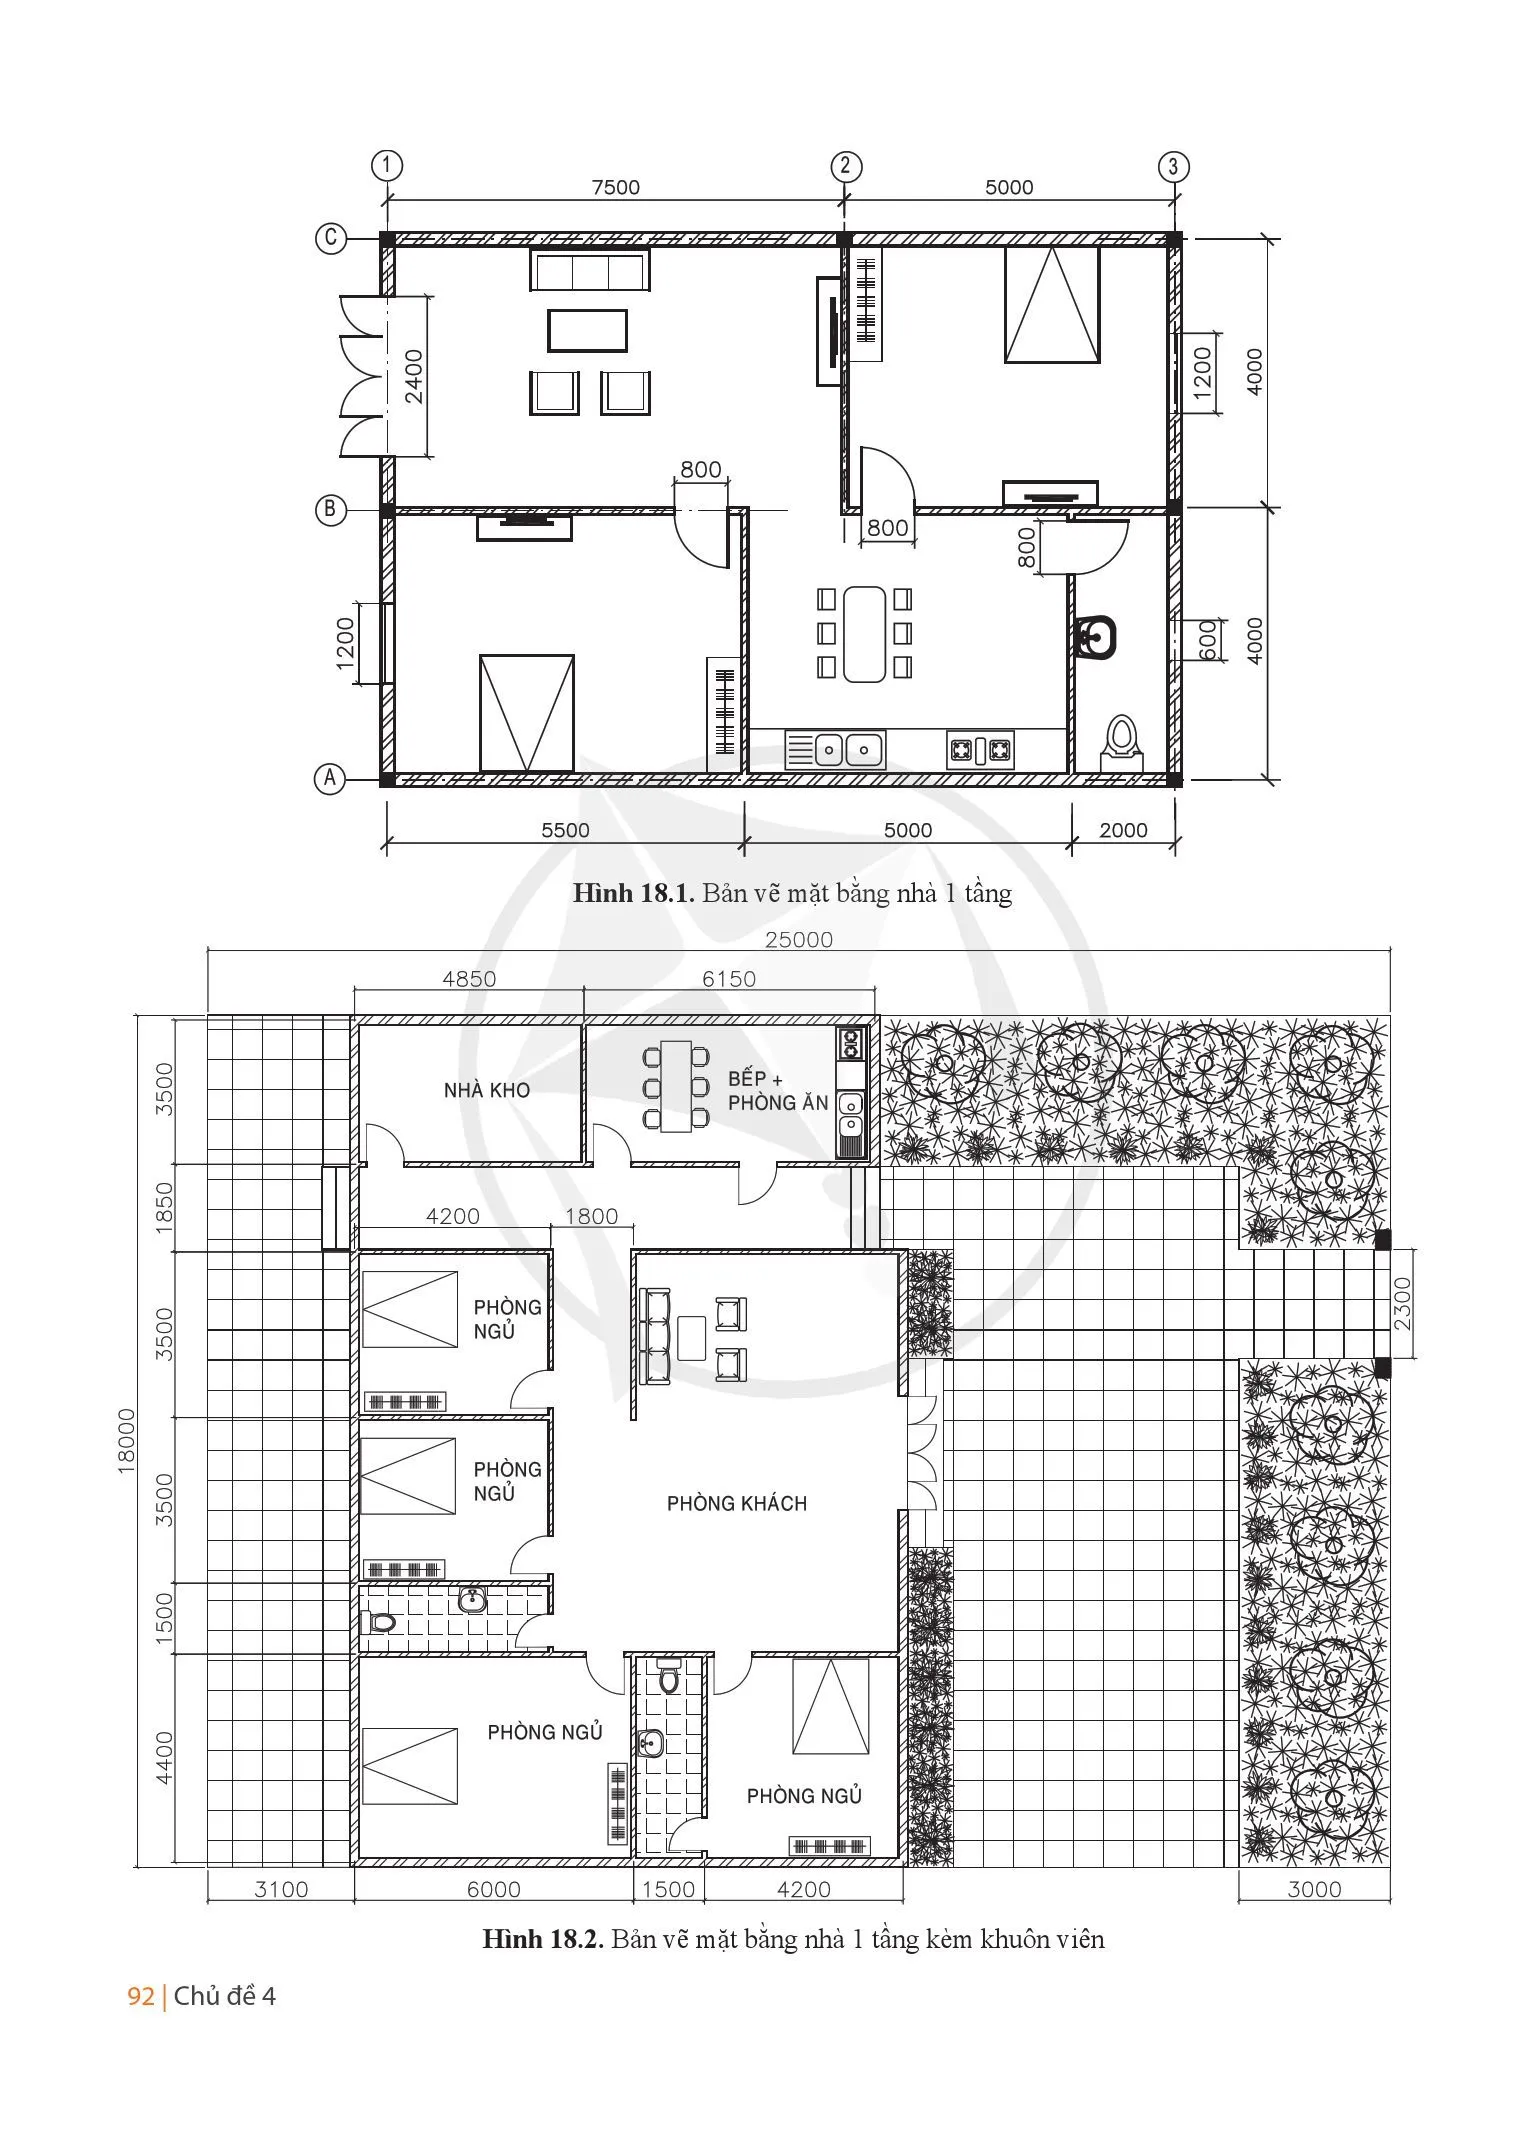 Bài 18 Dự án: Thiết kế ngôi nhà của em